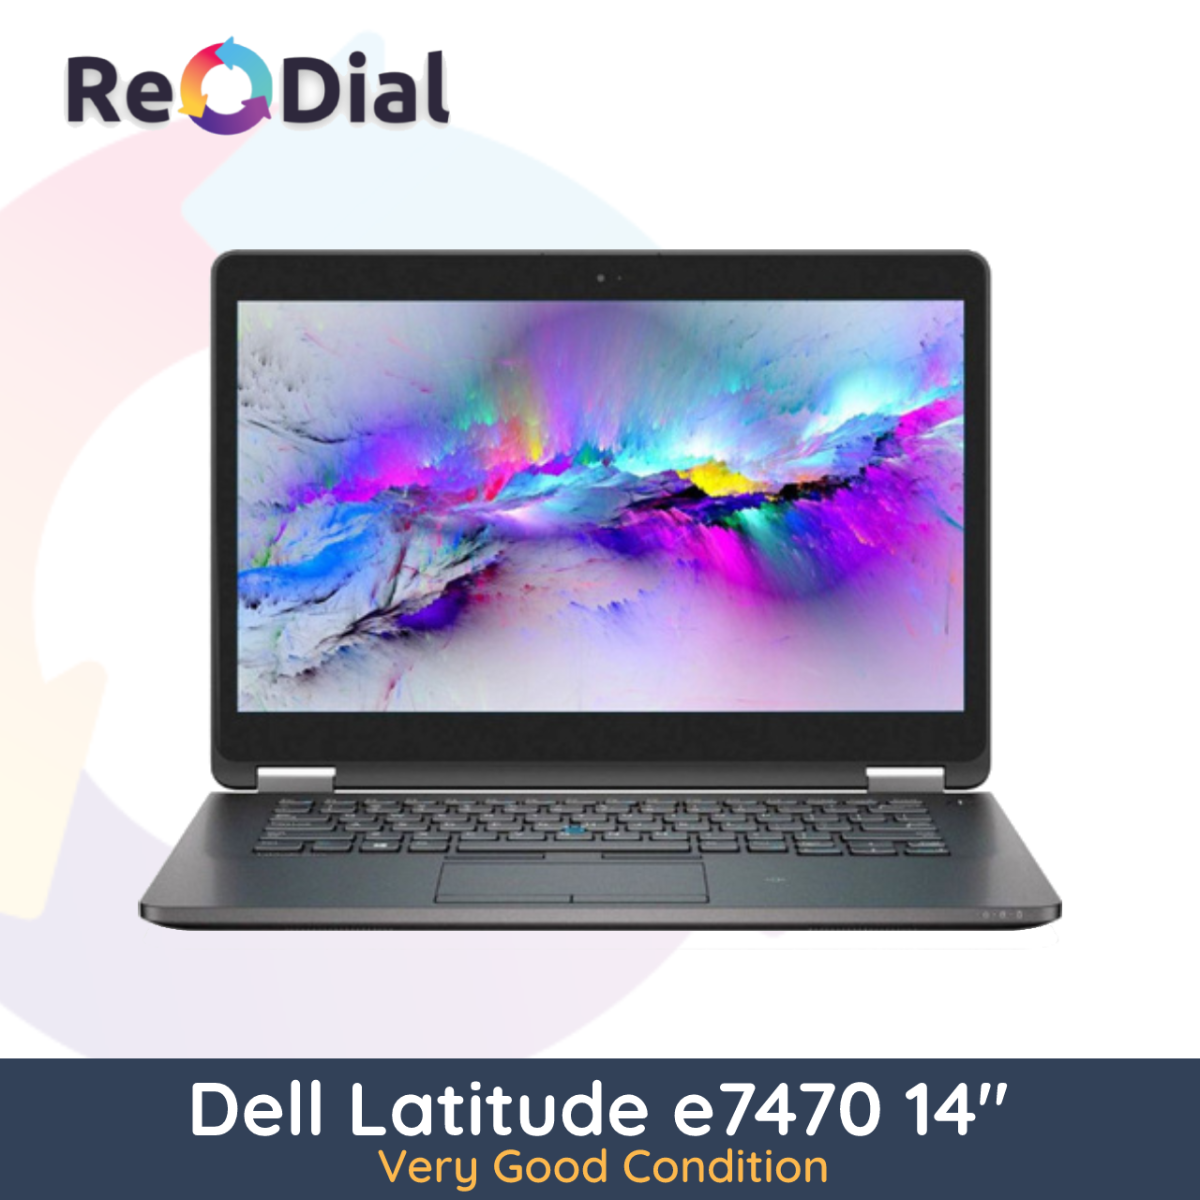 Dell Latitude E7470 14" i7-6600U 256GB 8GB RAM - Wins 10 Pro - Very Good Condition